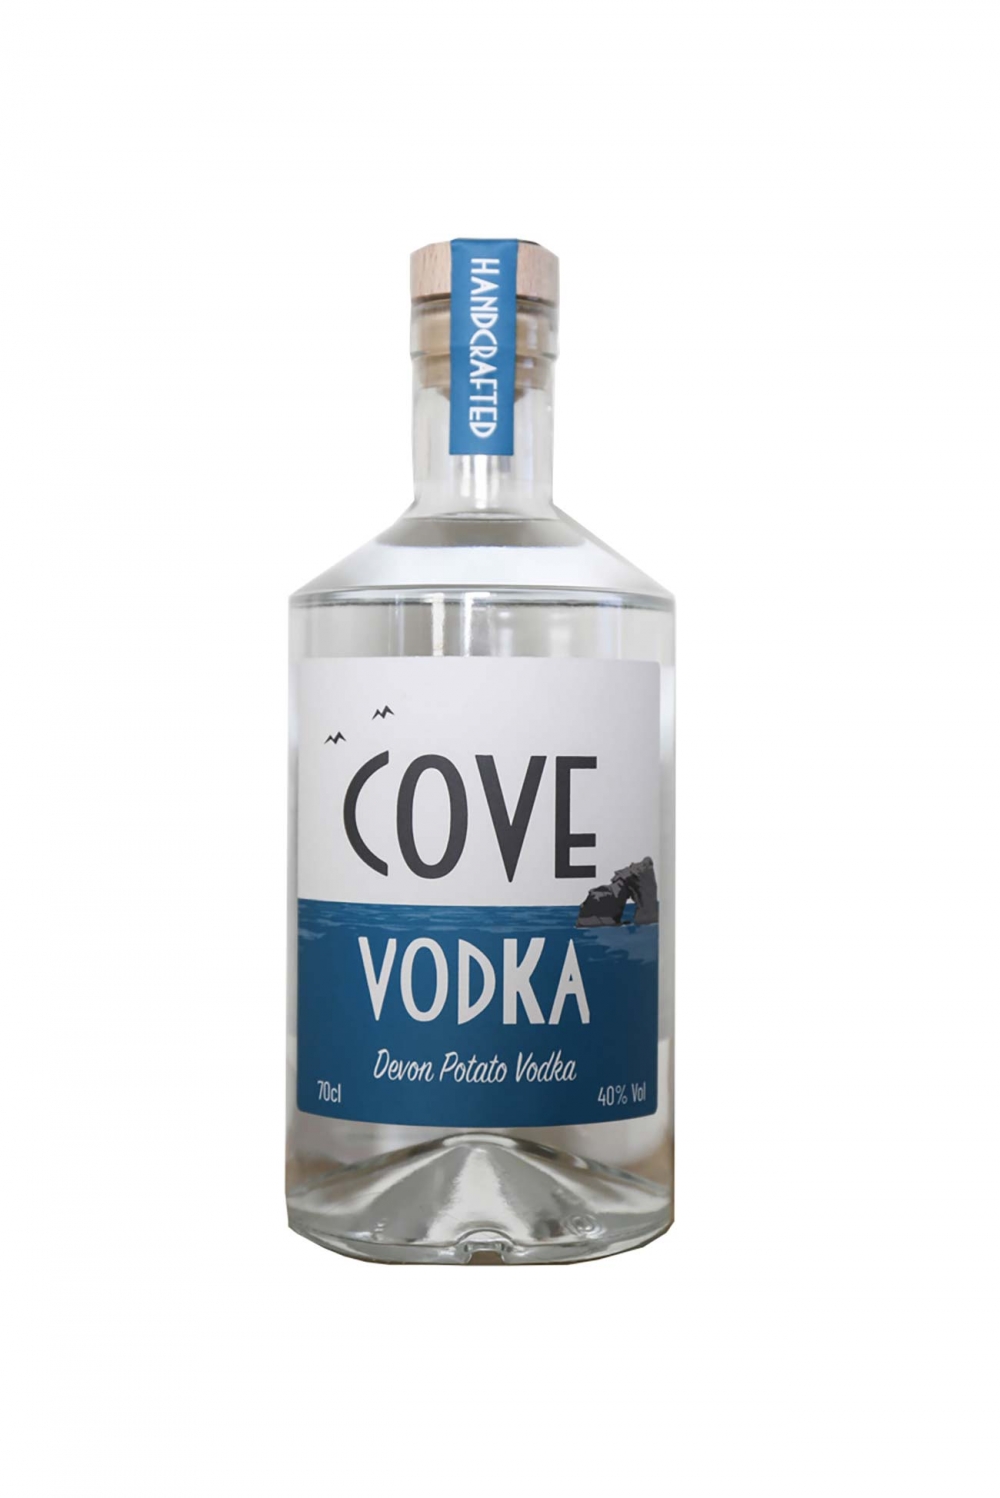 Cl Cove Vodka Cut Out